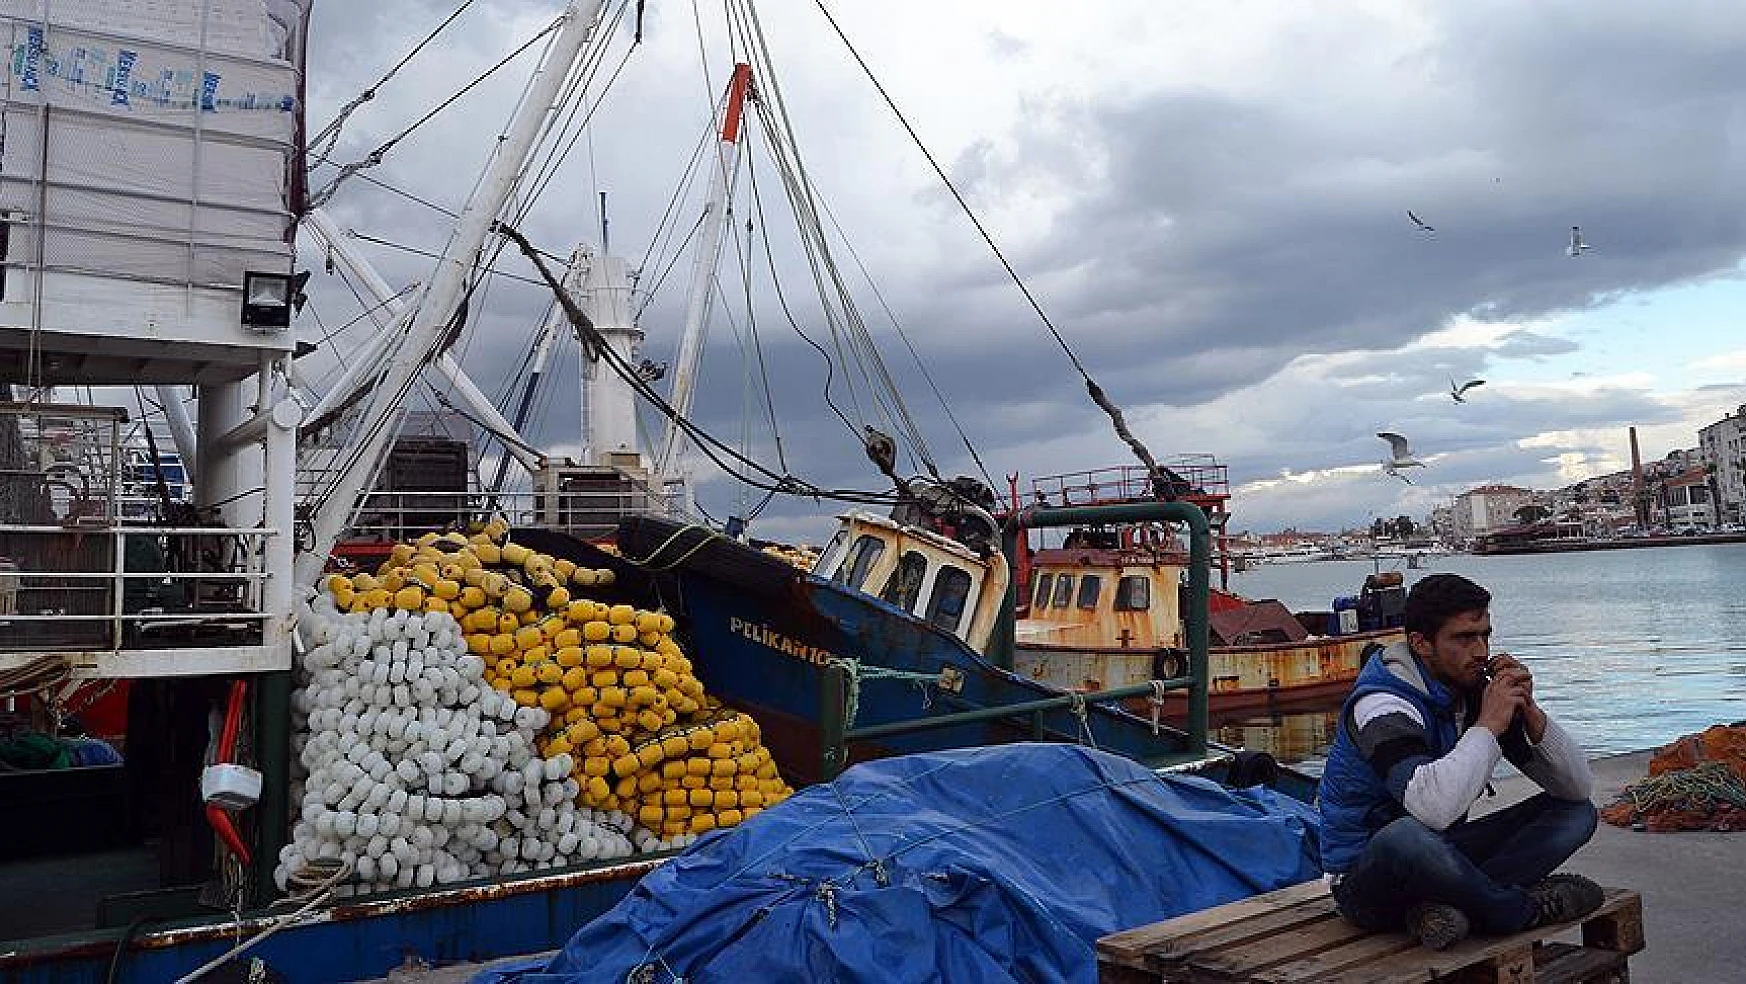 BM: Akdeniz ve Karadeniz'de aşırı avlanma azalsa da balıkçılık kaynakları hala baskı altında